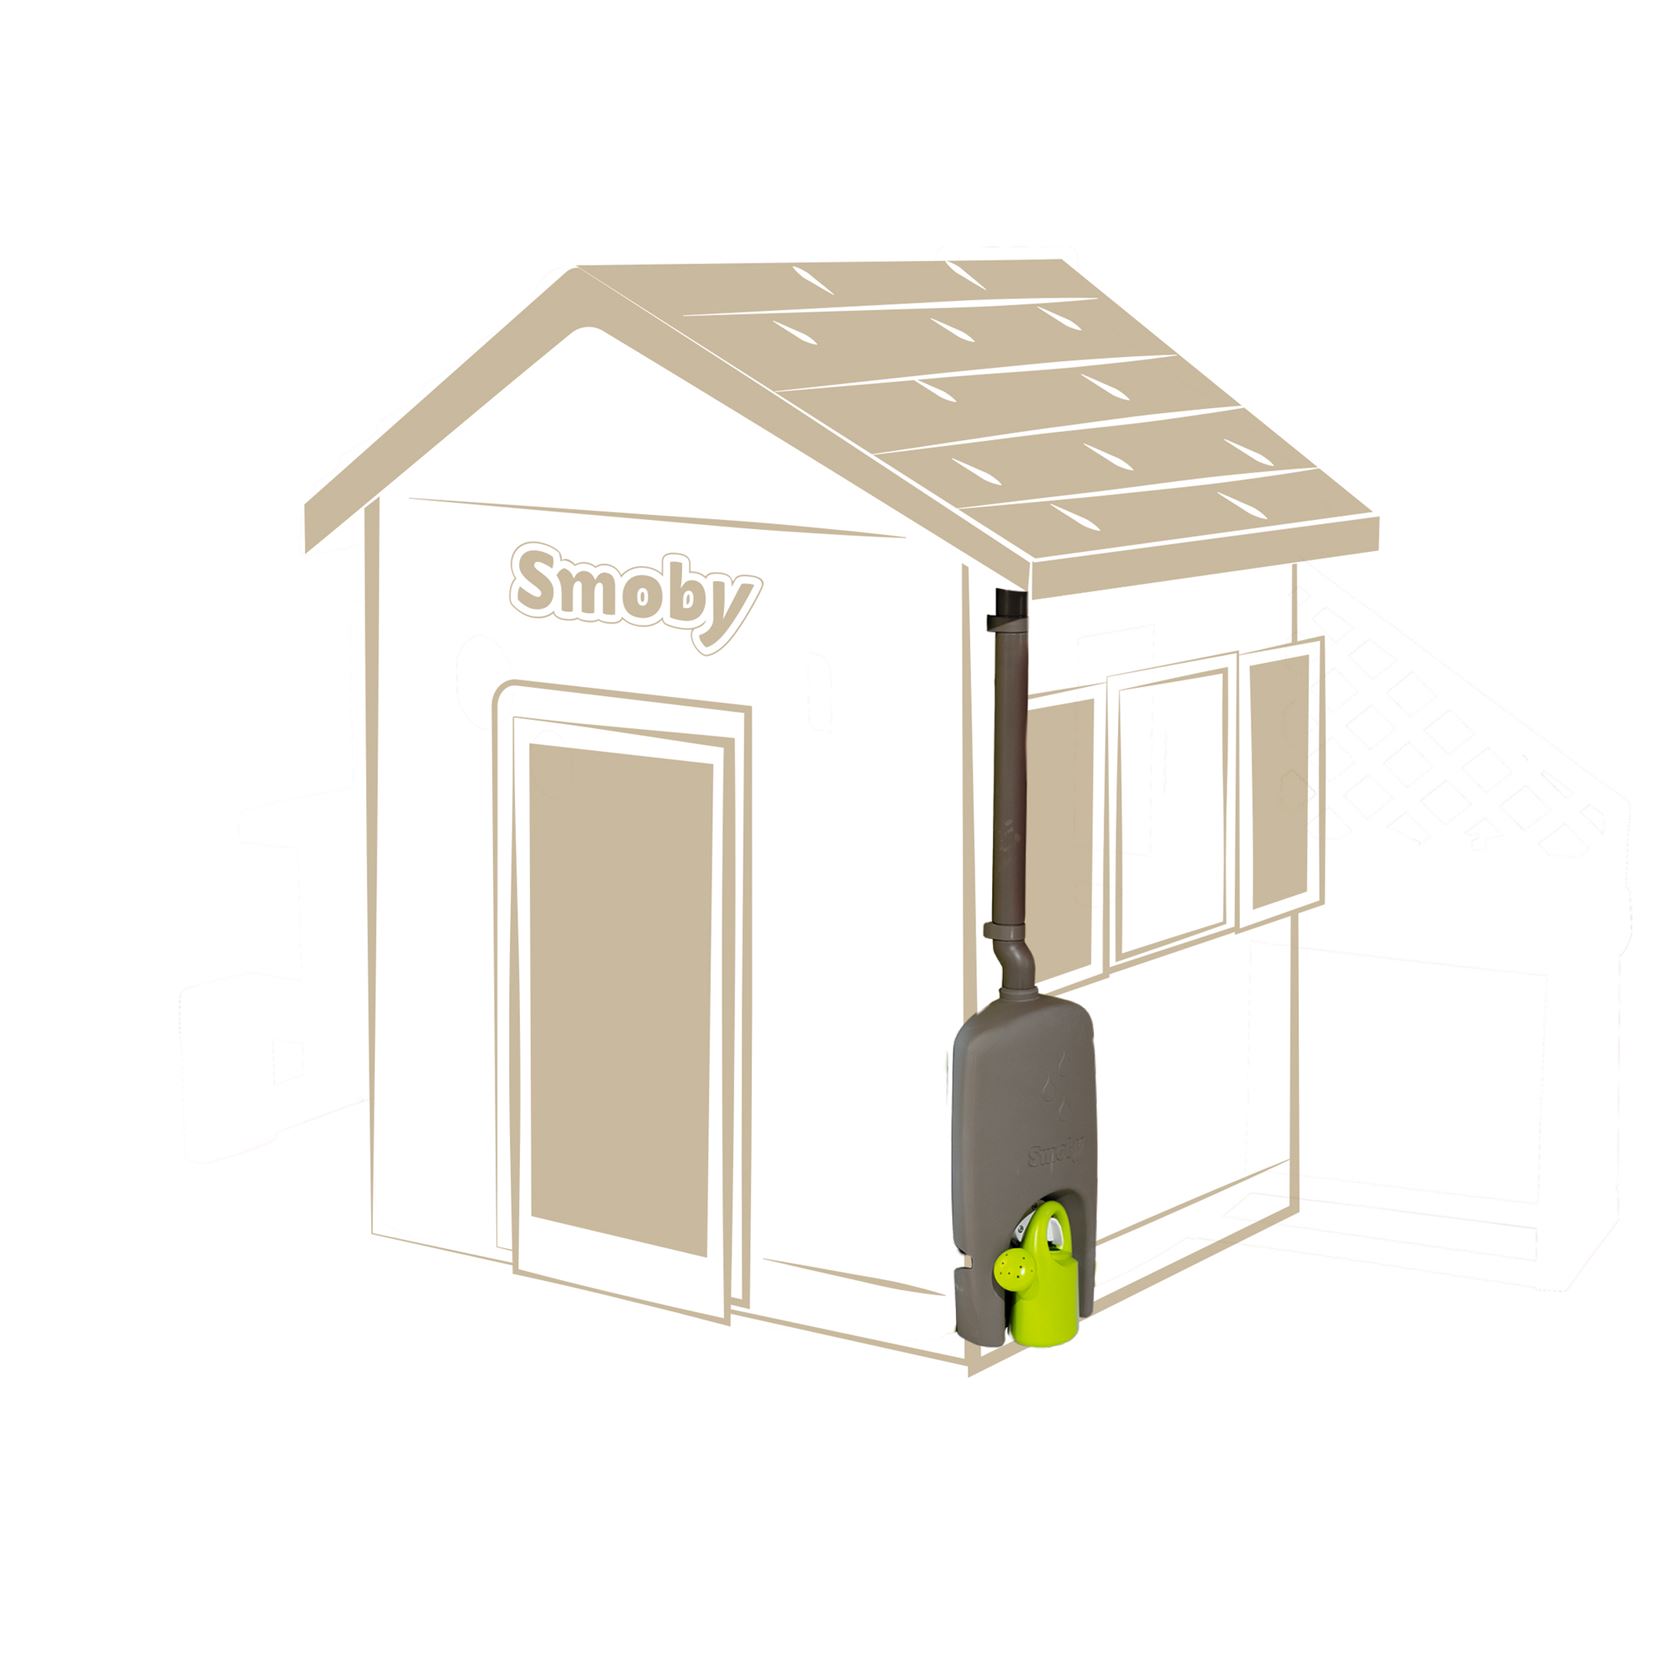 Smoby accessoire - regenton met gietertje voor Smoby speelhuisjes